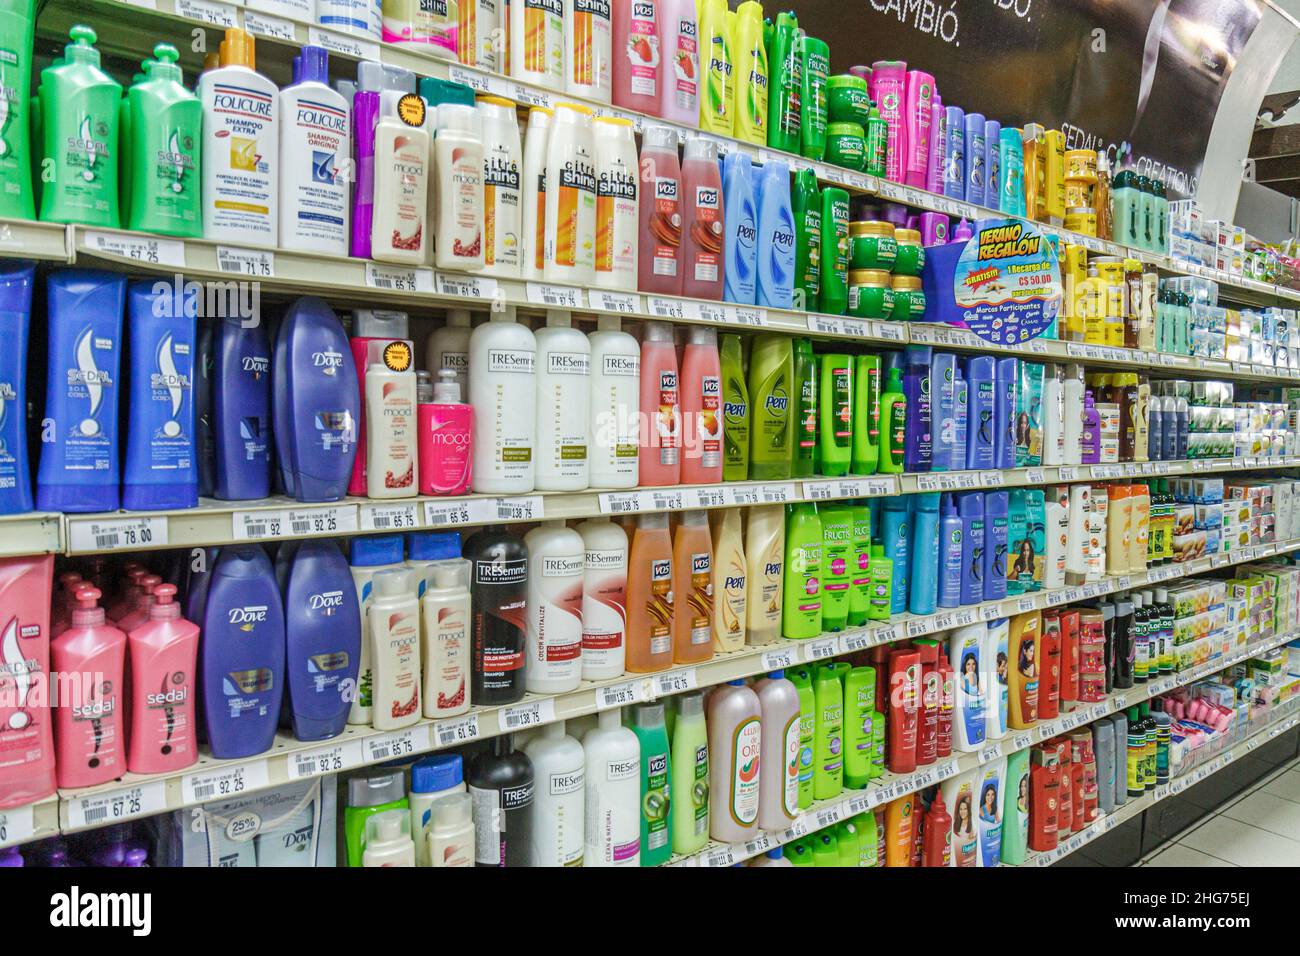 Nicaragua Managua supermercato negozio, shopping commercio al dettaglio scaffali scaffali cura personale prodotti da bagno shampoos cura dei capelli Pert dove VO5 Fructis Citre Foto Stock